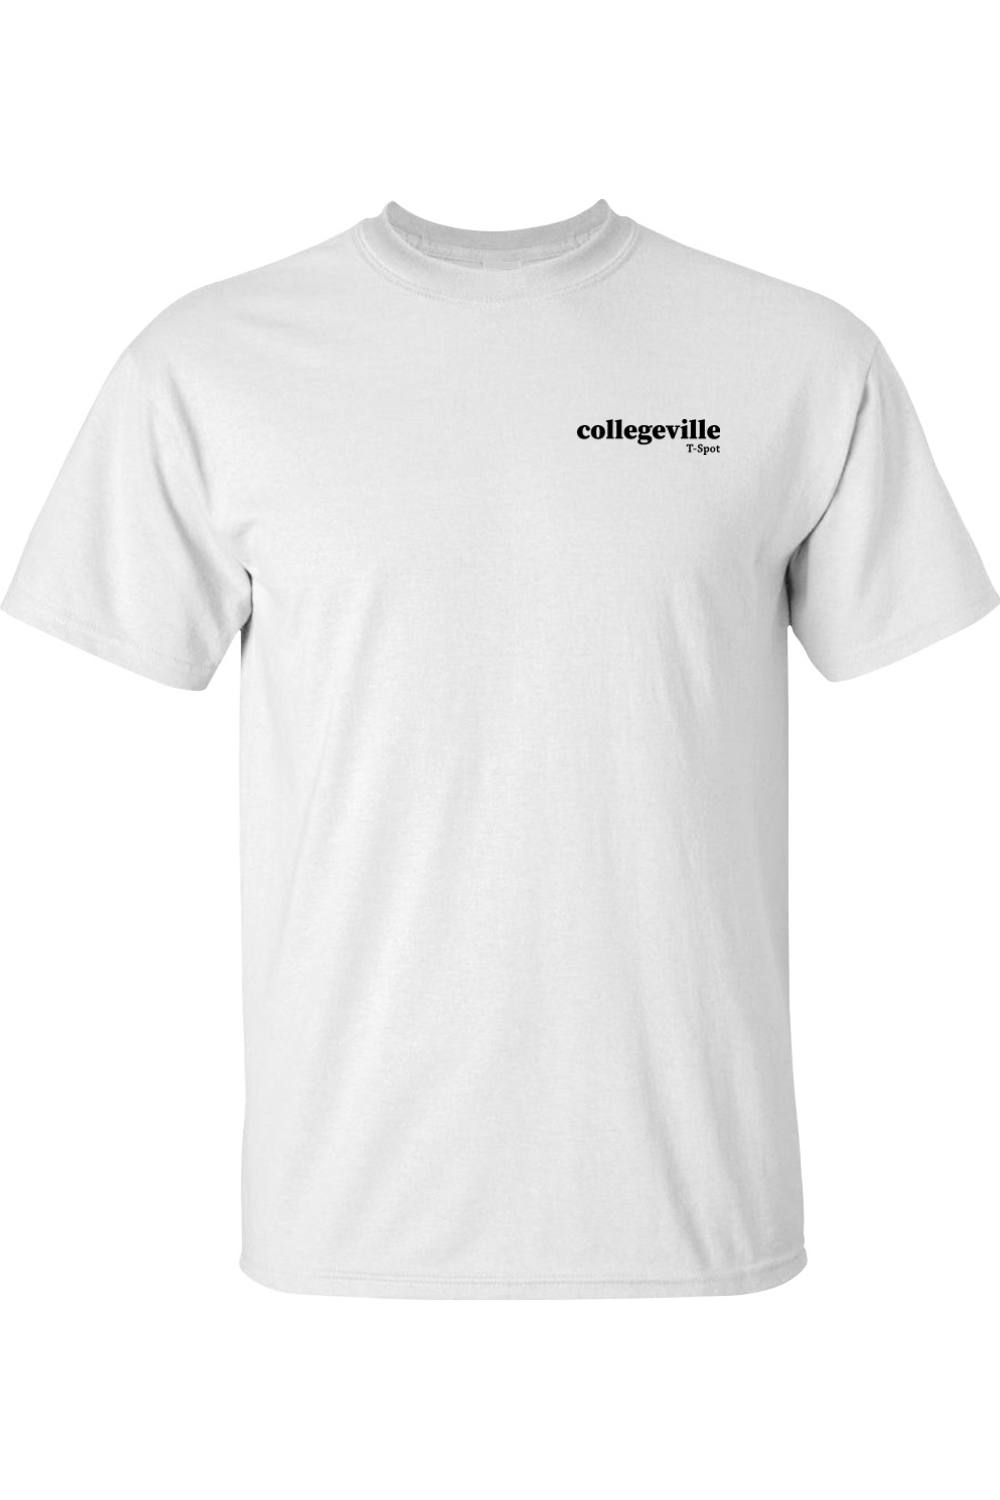 Collegeville T-Shirt